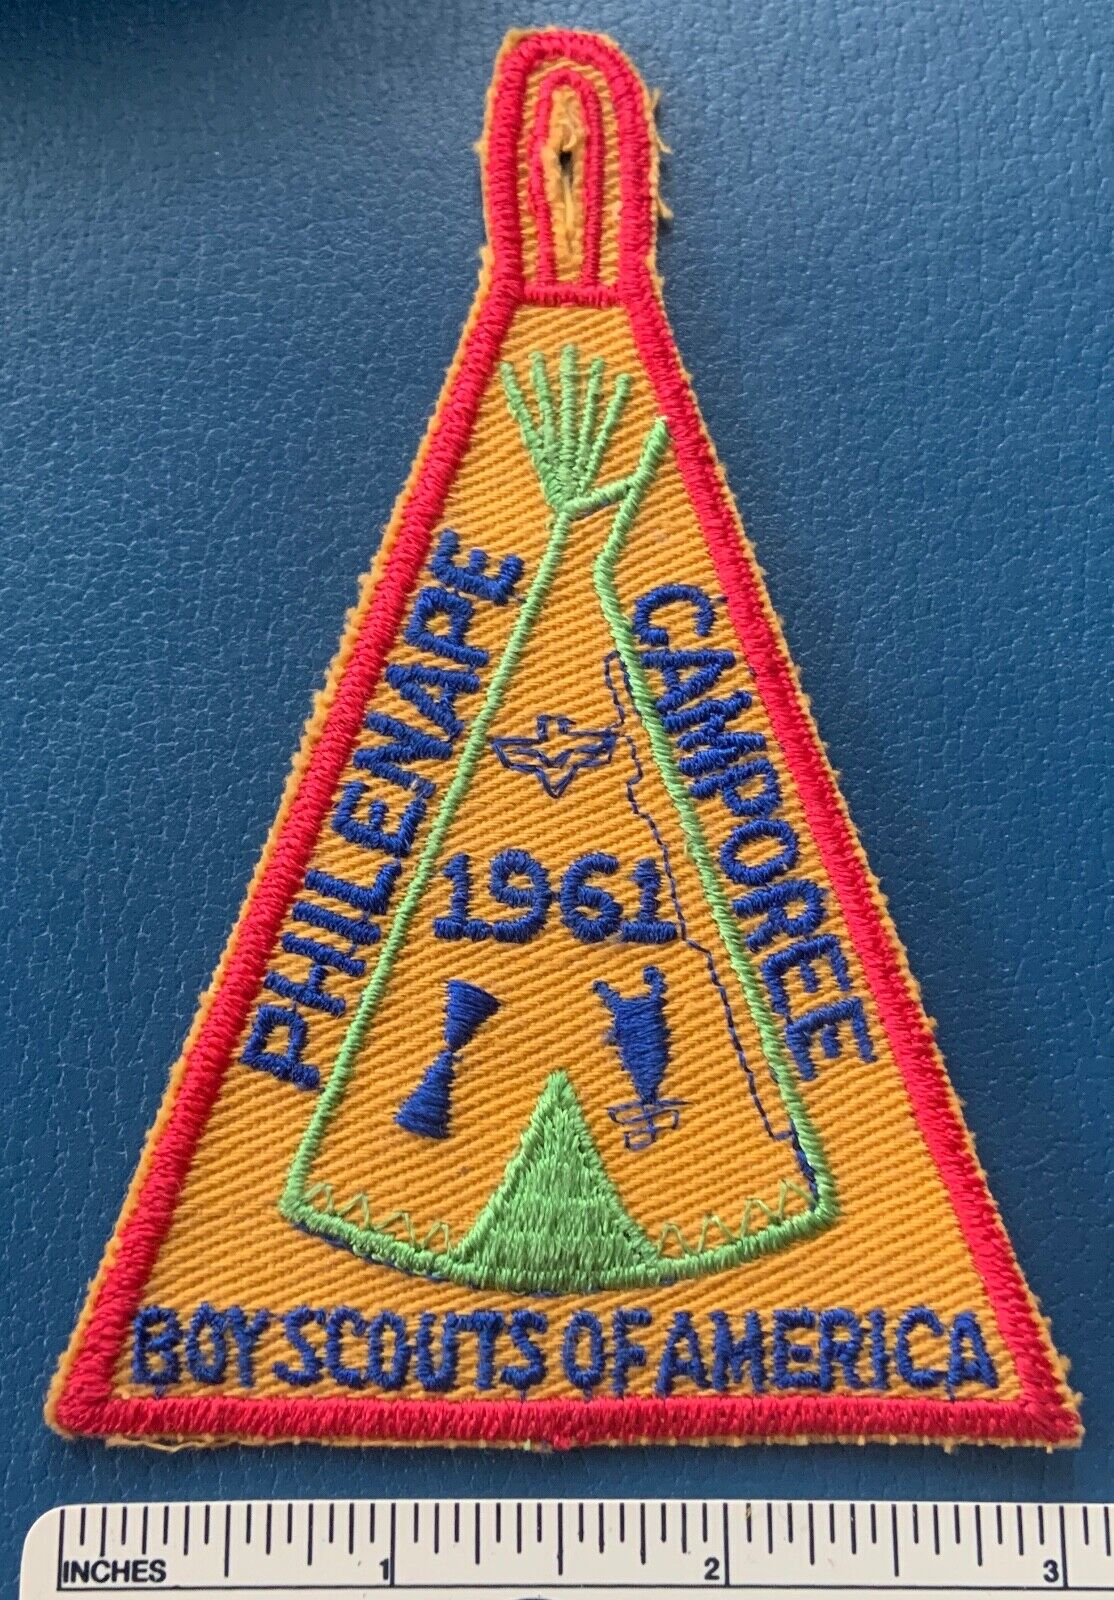 Vintage 1961 PHILADELPHIA COUNCIL Philenape Camporee Boy Scout PATCH BSA Camp